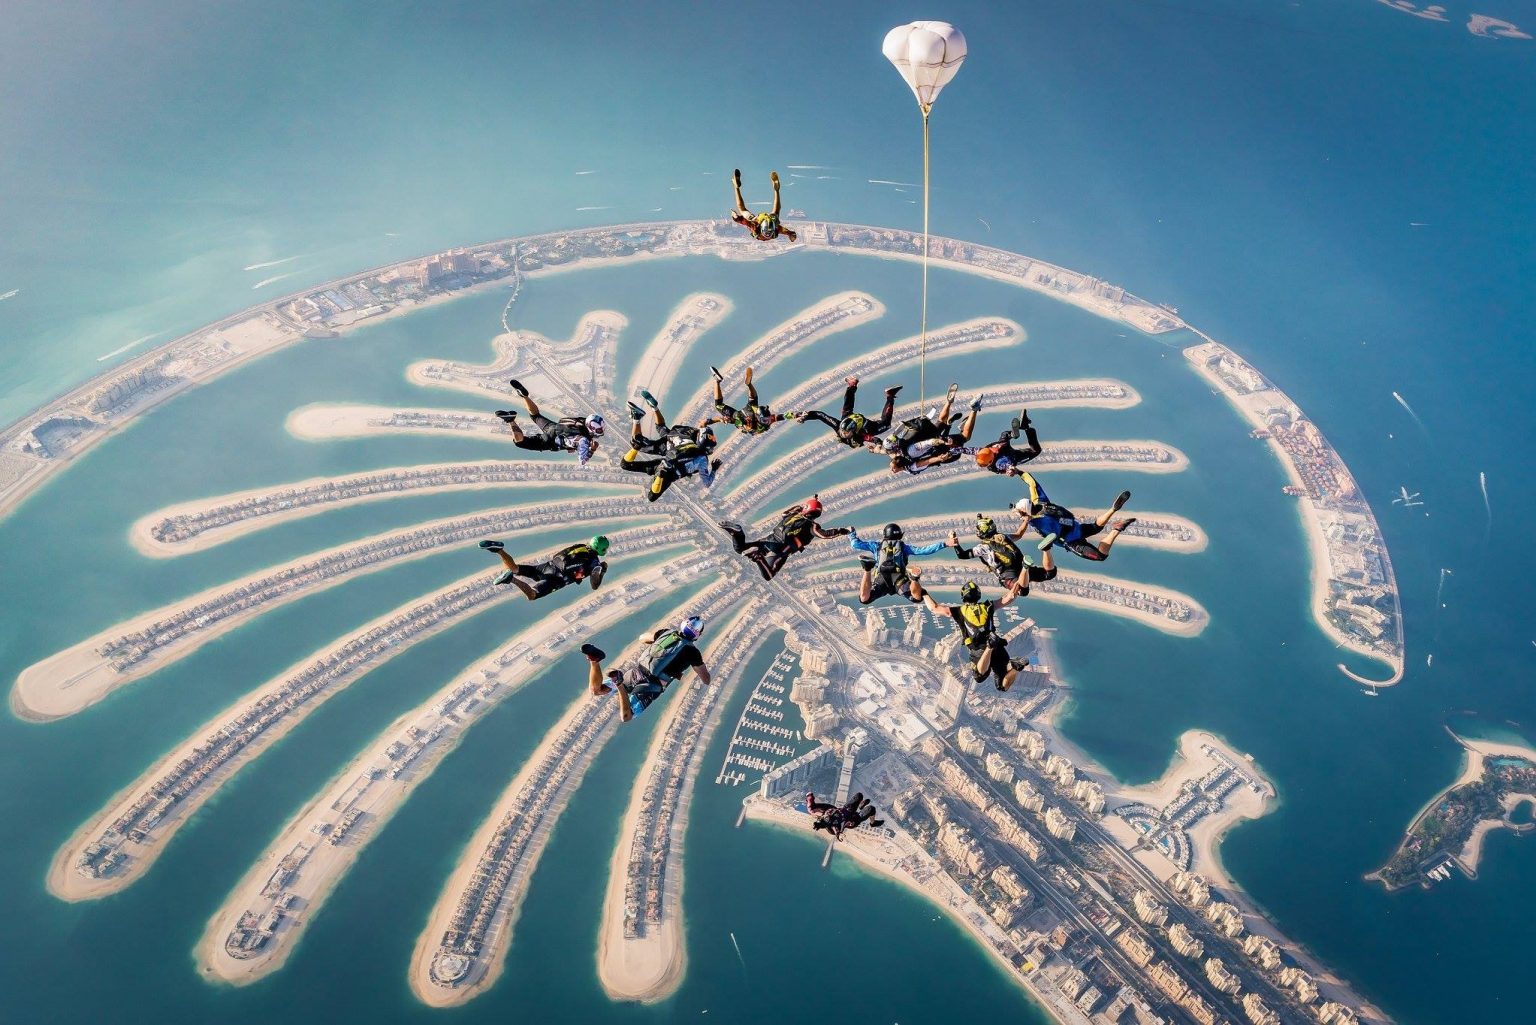 Skydive in Dubai.